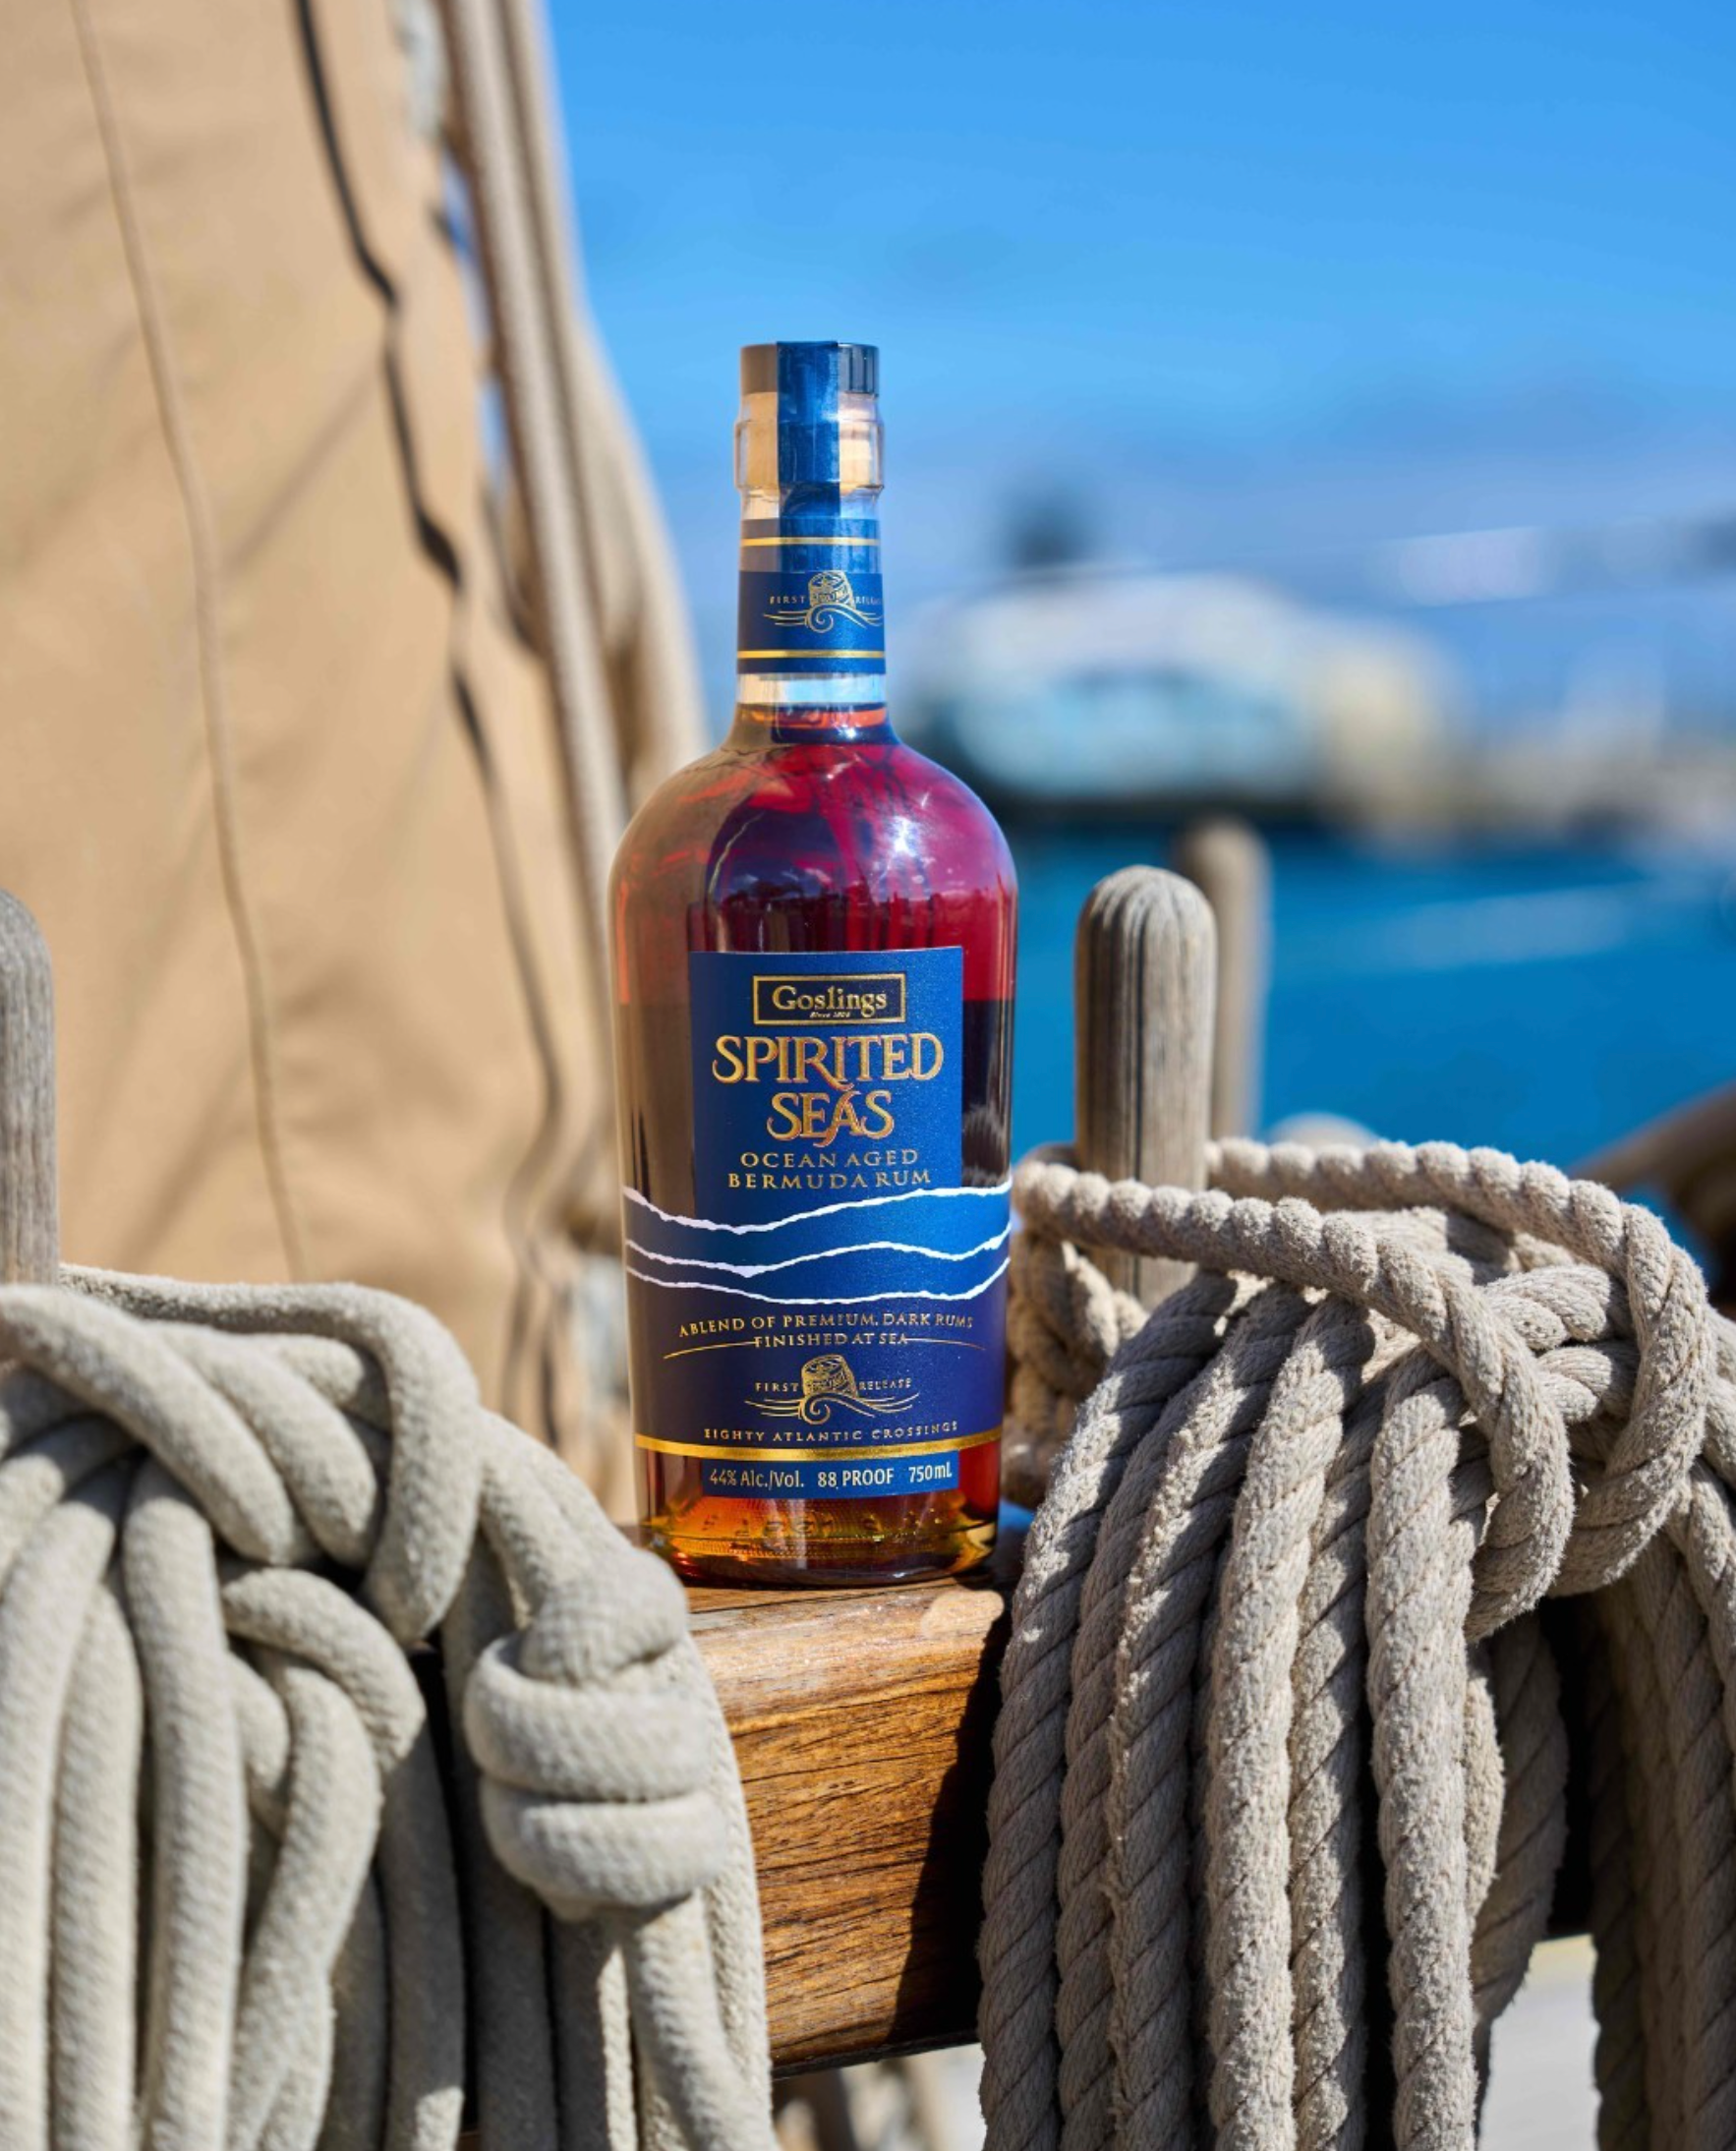 Gosling's Spirited Seas Ocean Aged Bermuda Rum